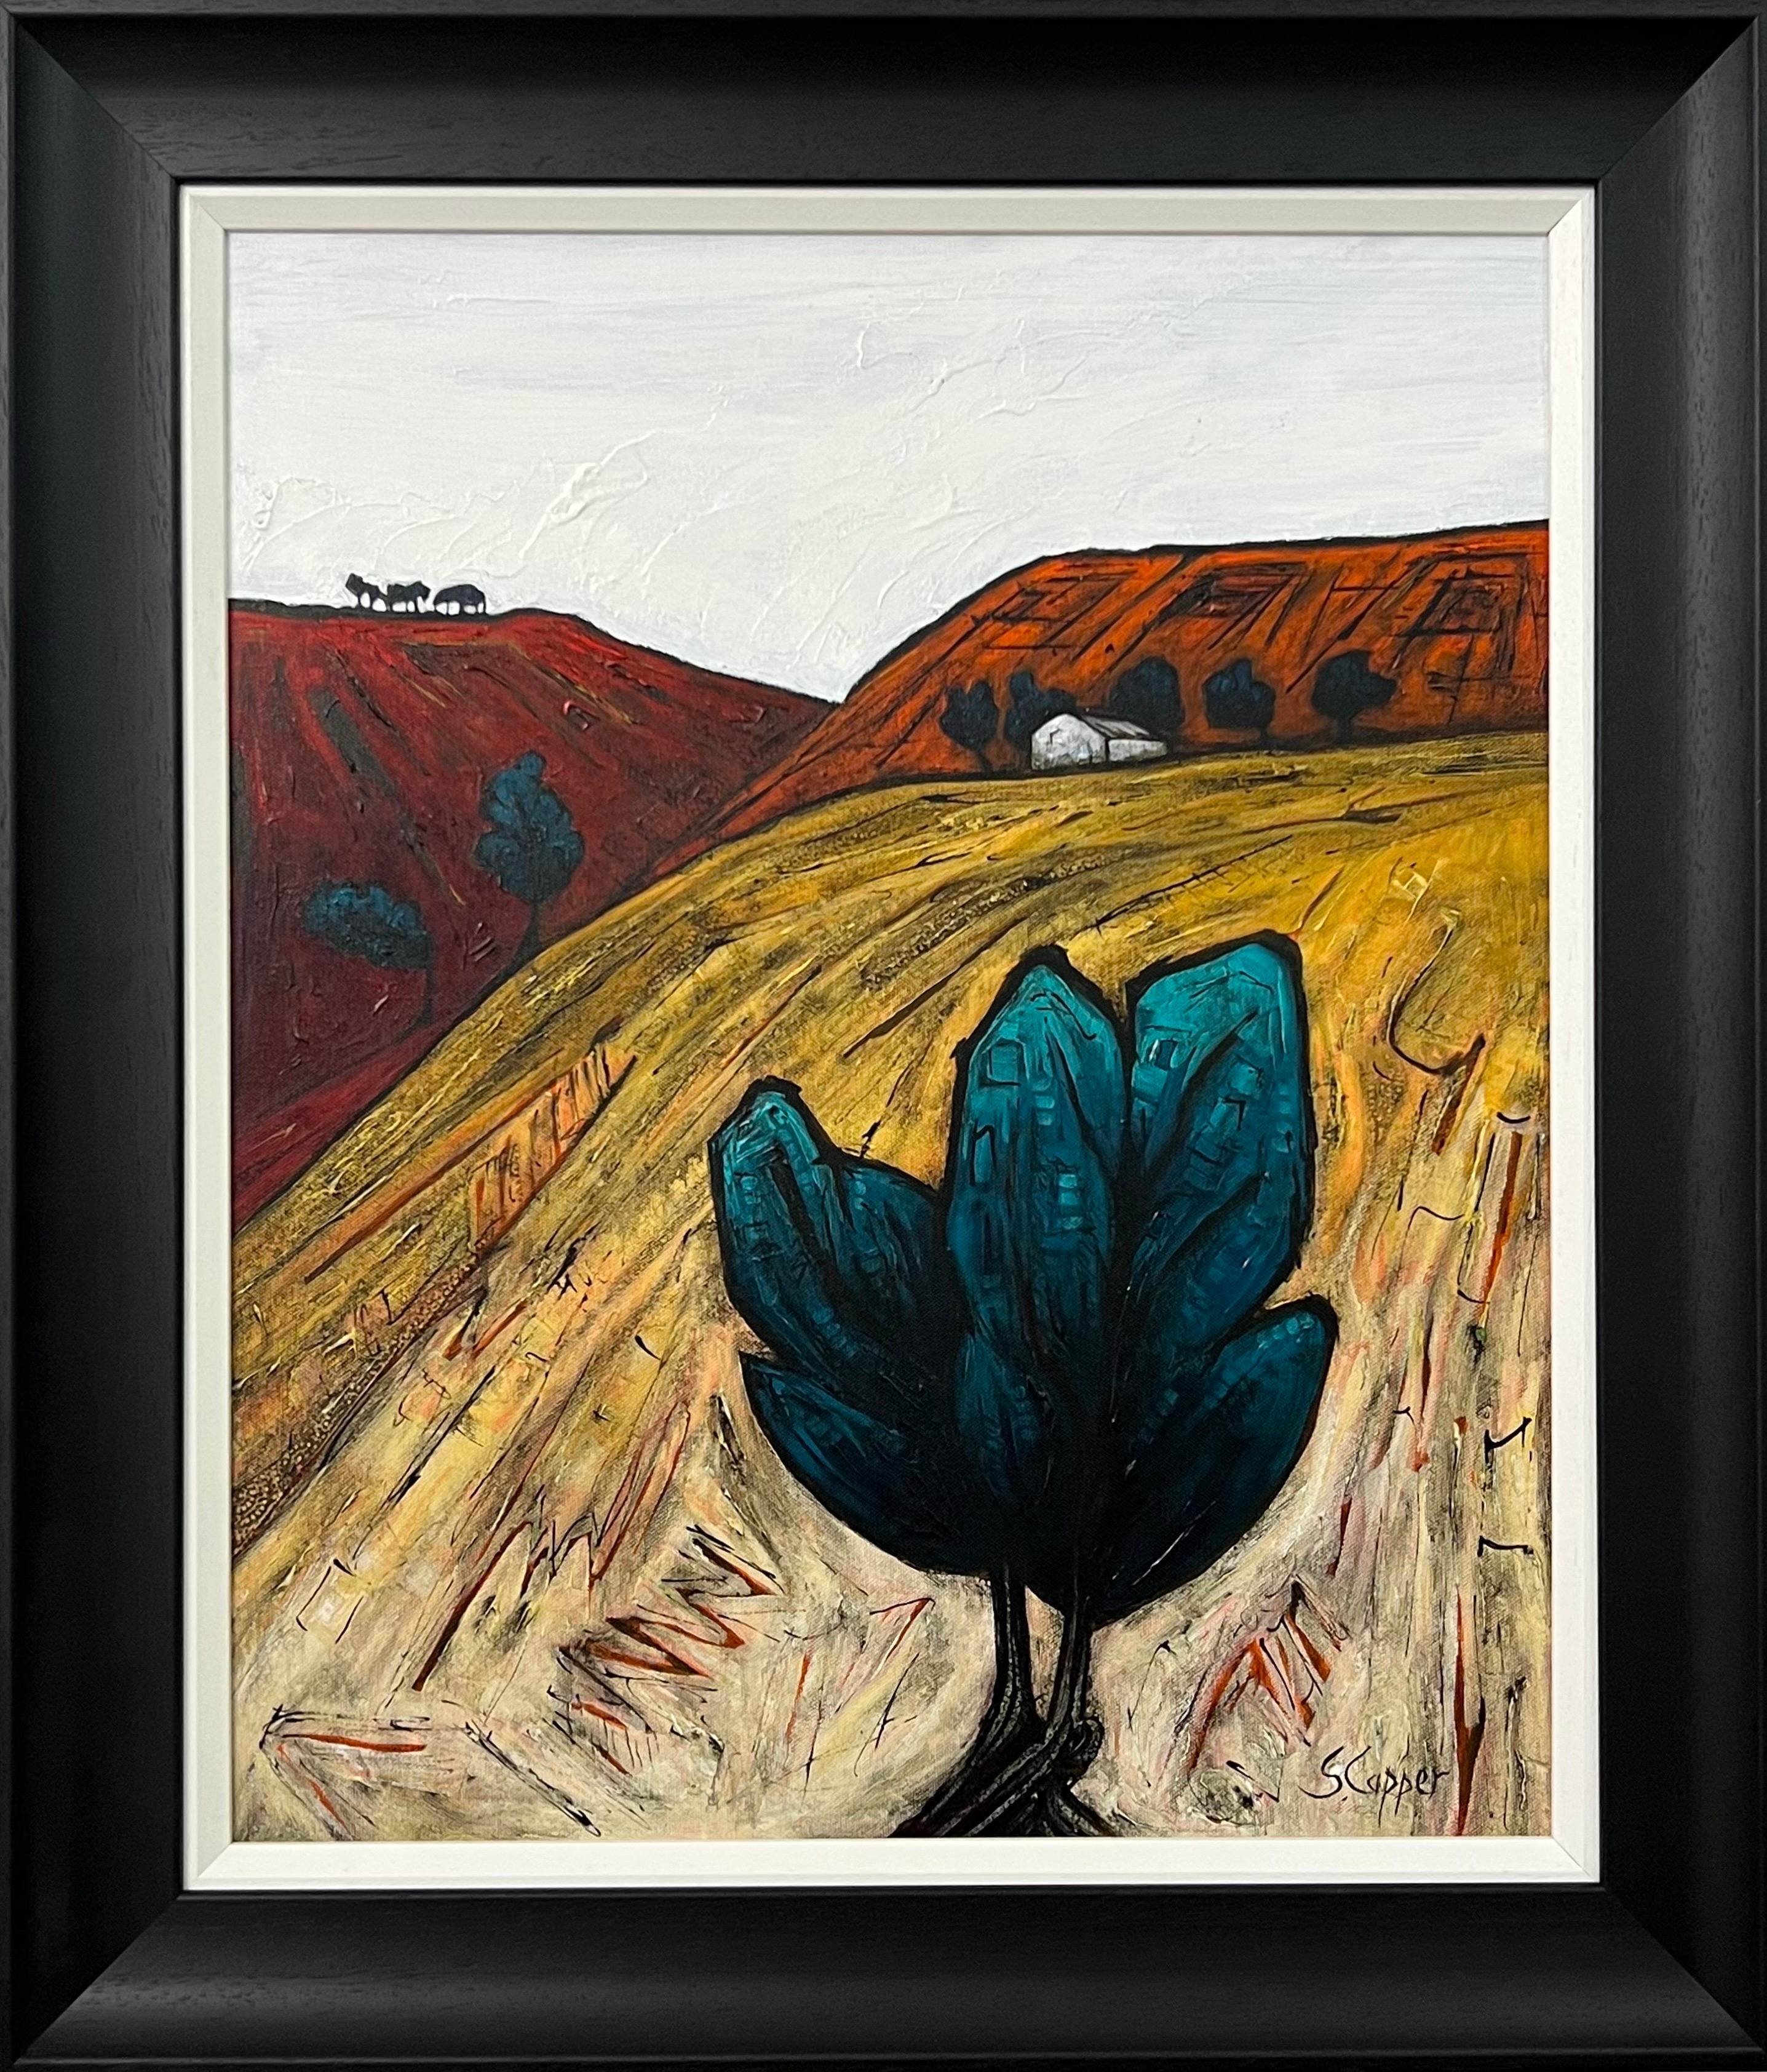 Peinture de paysage abstrait d'un arbre solitaire sur un artiste britannique cubiste et fauviste